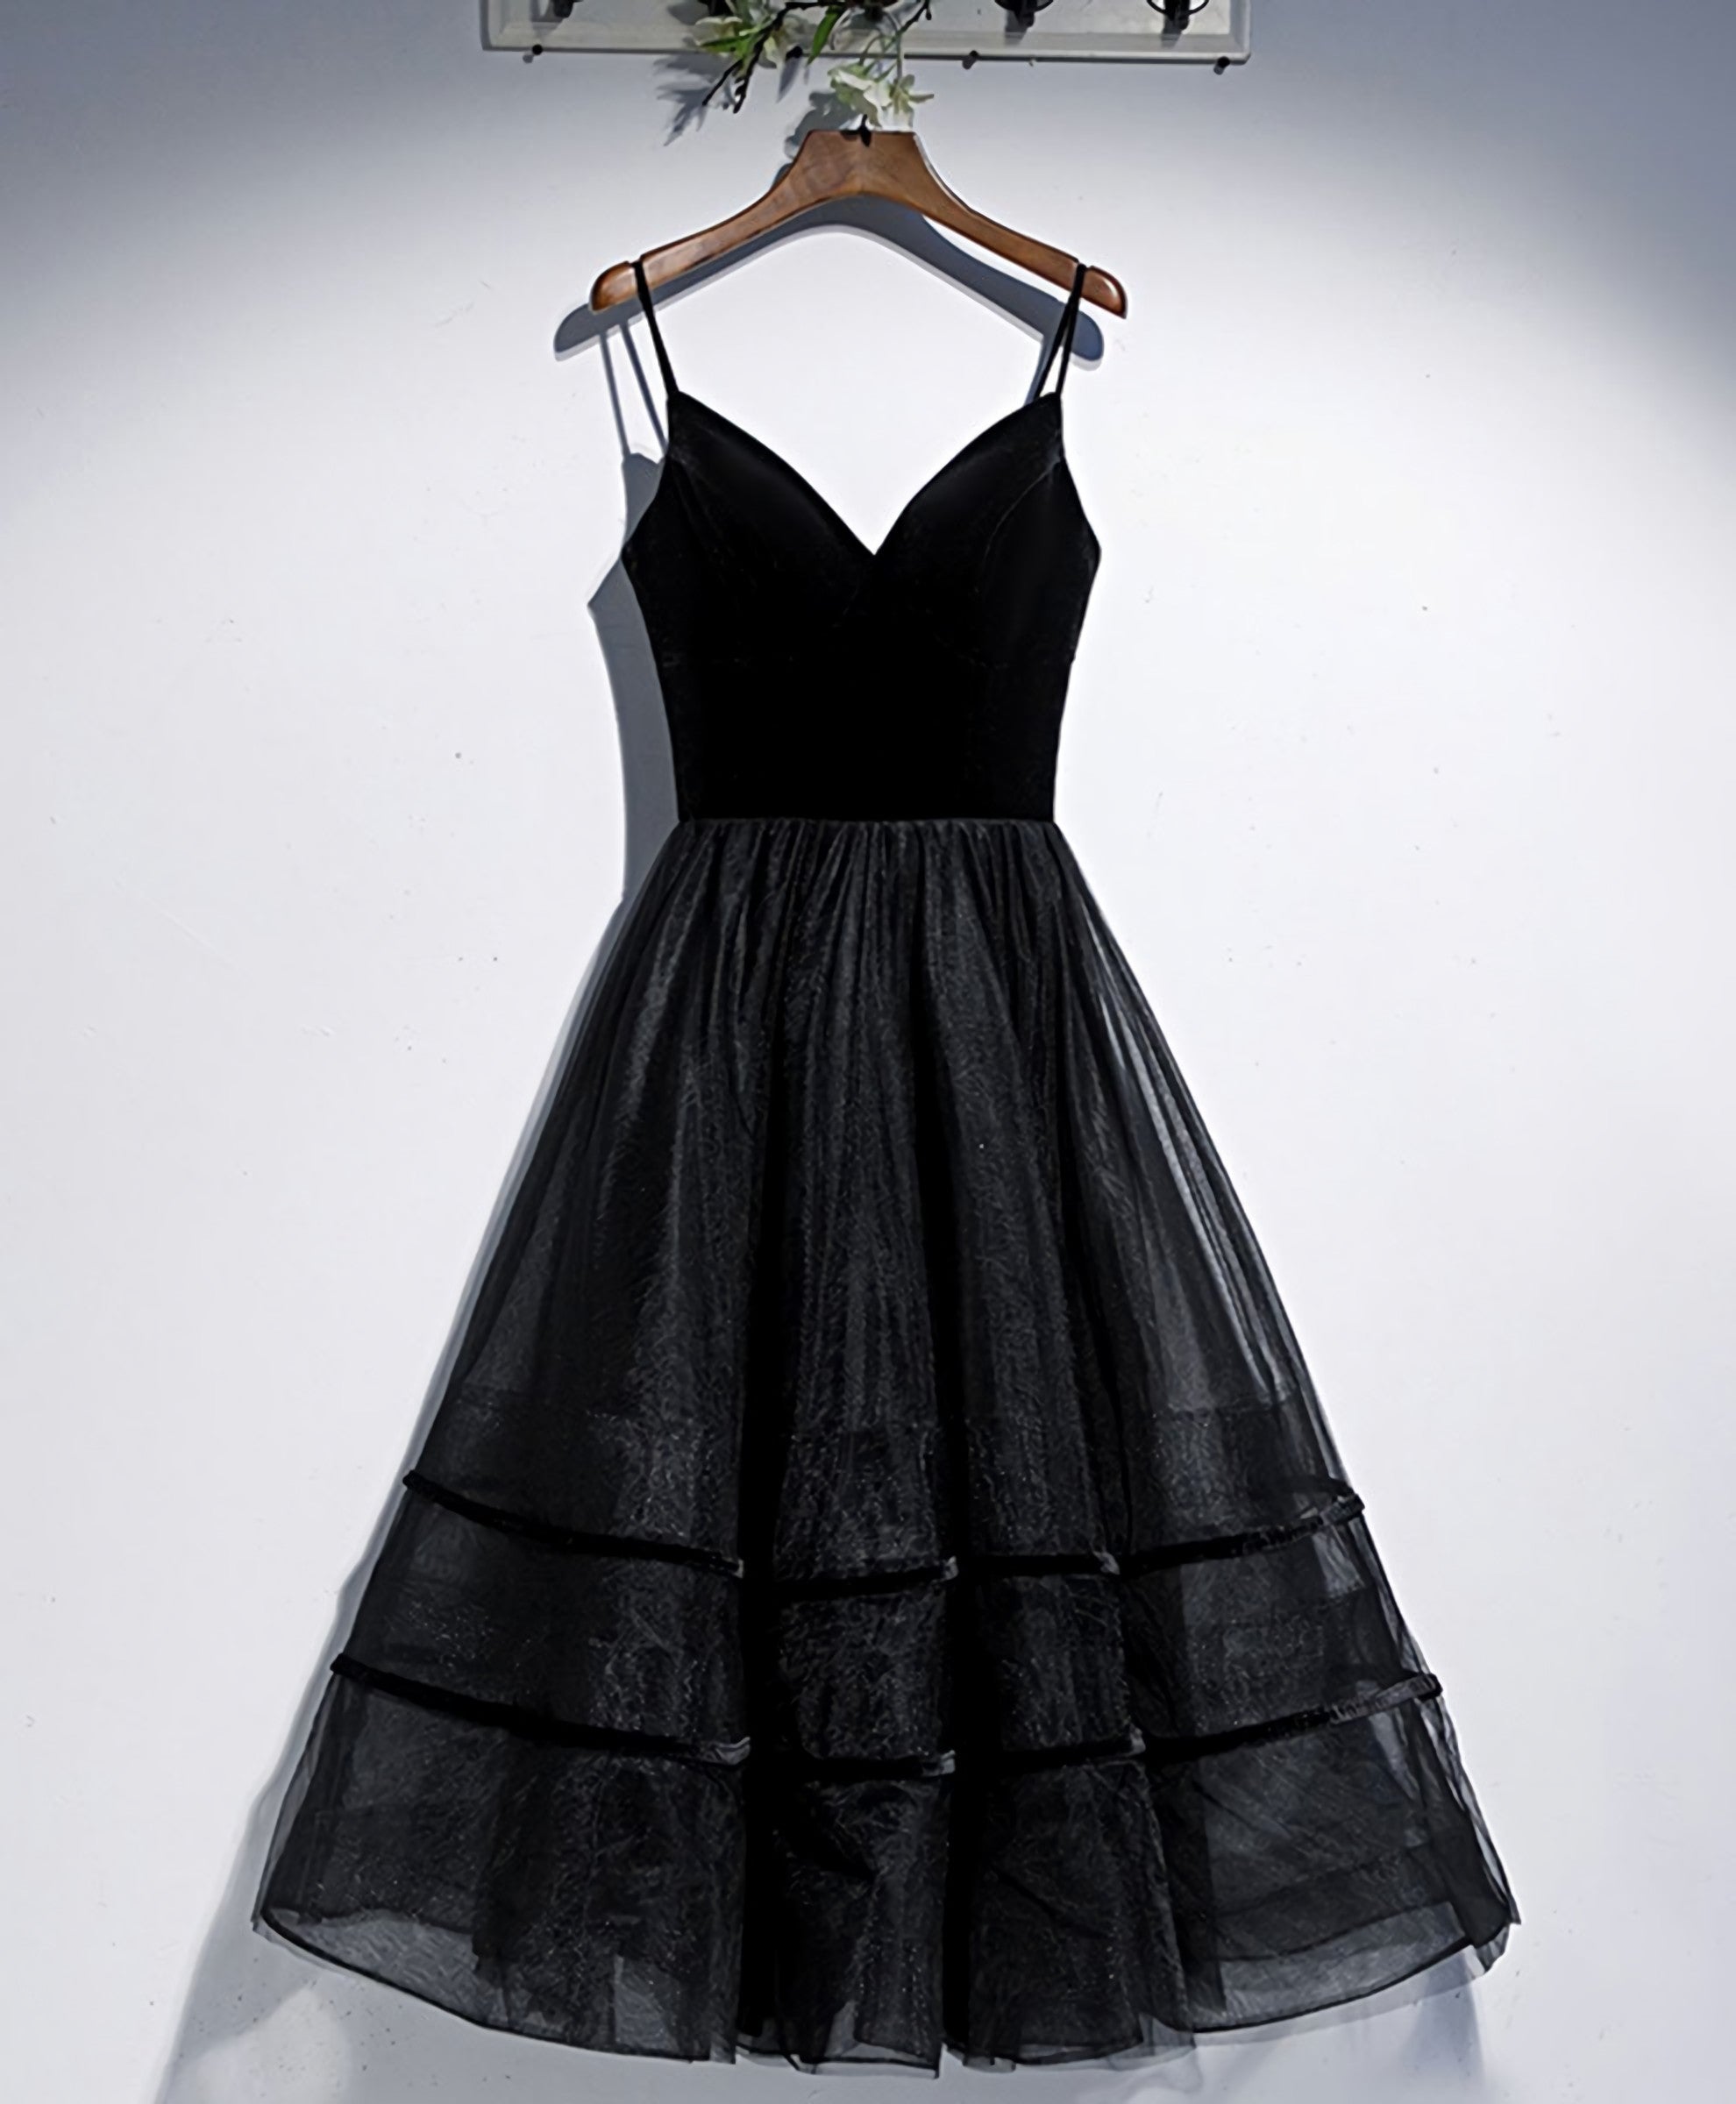 Black V Neck Tulle Short Corset Prom Dress, Black Tulle Corset Homecoming Dress outfit, Prom Dress Short